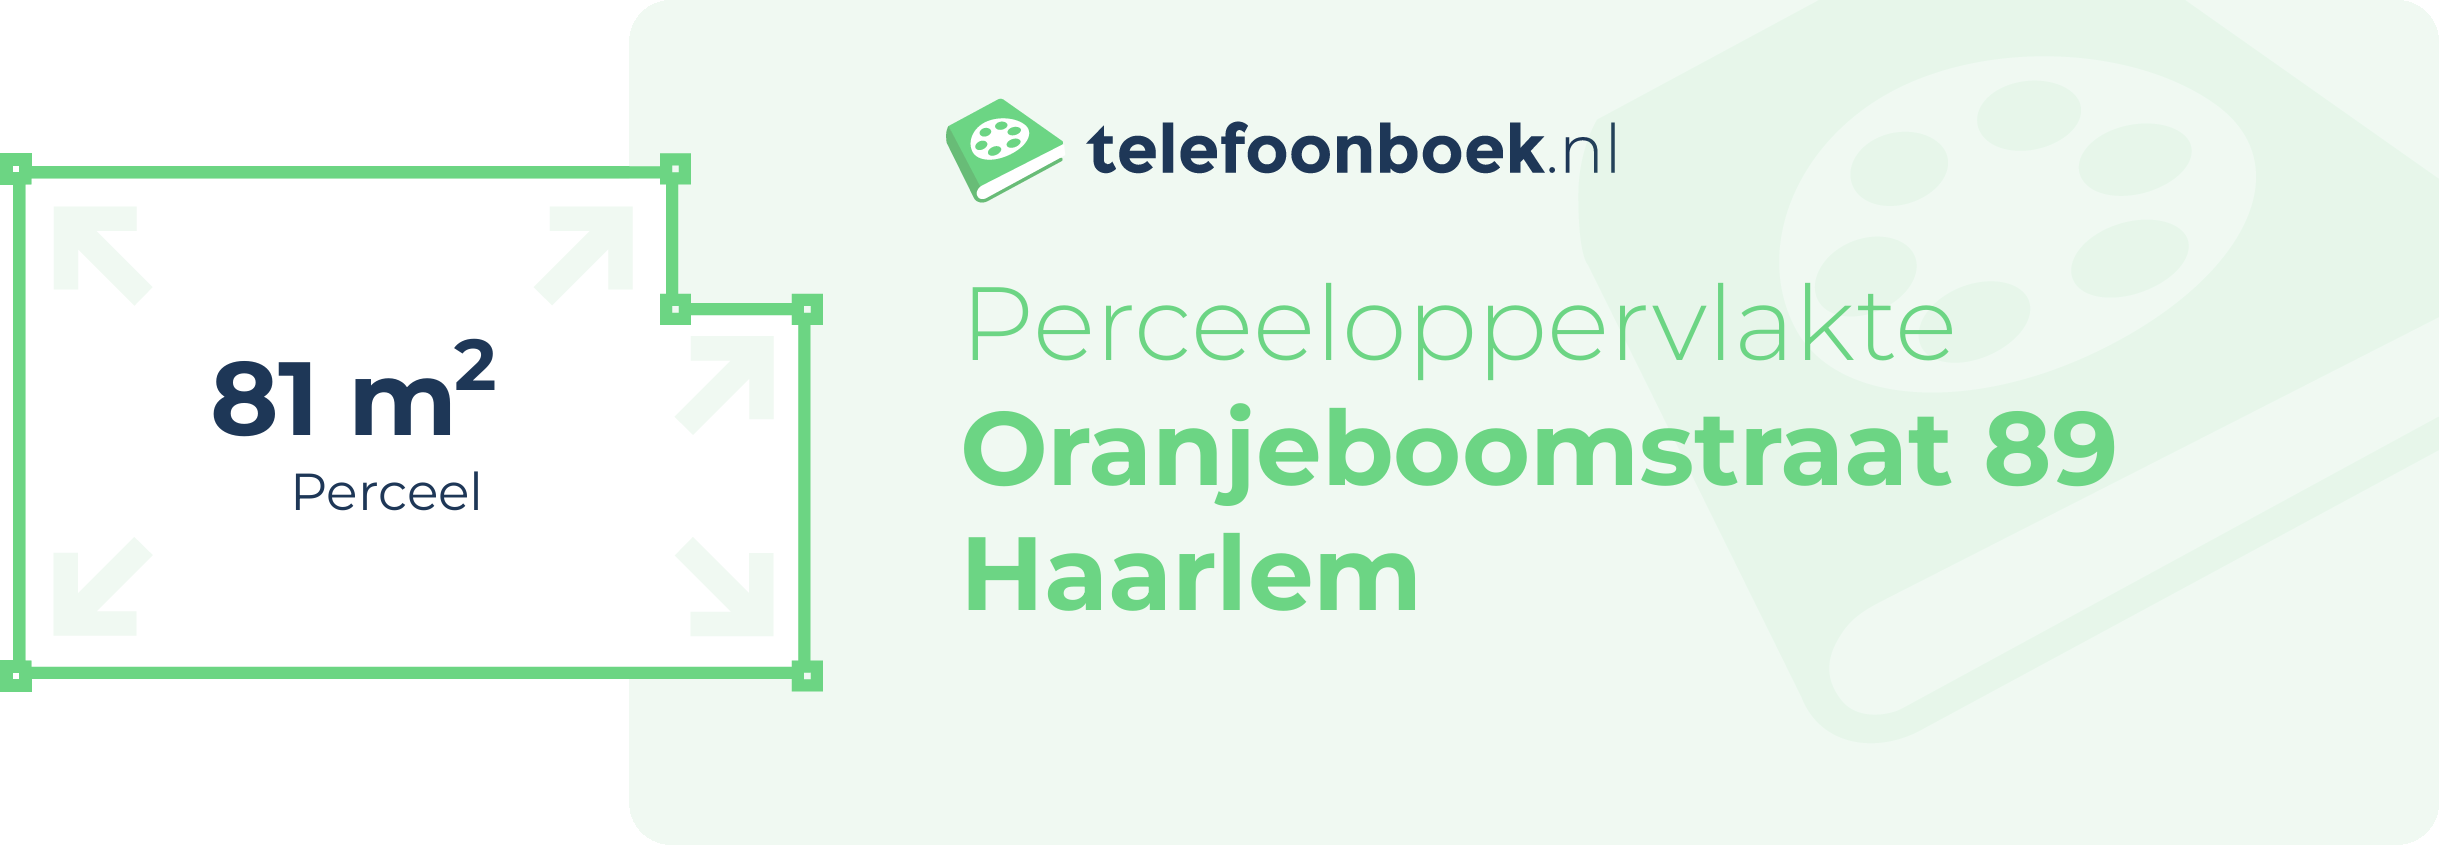 Perceeloppervlakte Oranjeboomstraat 89 Haarlem